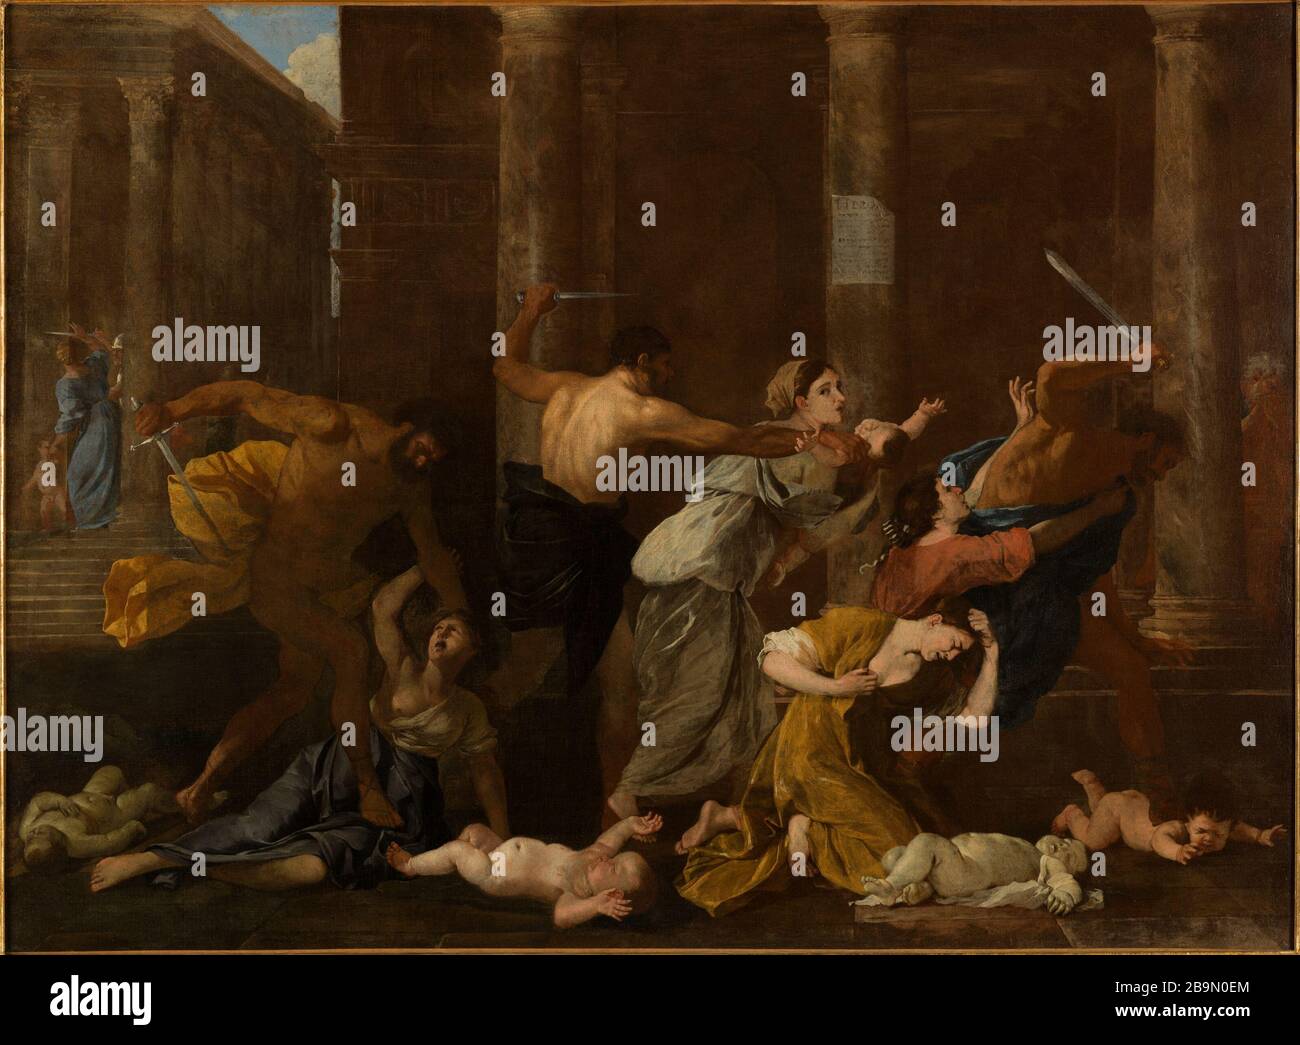 Das Massaker von den Innocents. ' attribué à Nicolas Poussin (1594-1665). "Le Massacre des Innocents". Huile sur toile. 1626-1627. Musée des Beaux-Arts de la Ville de Paris, Petit Palais. Stockfoto